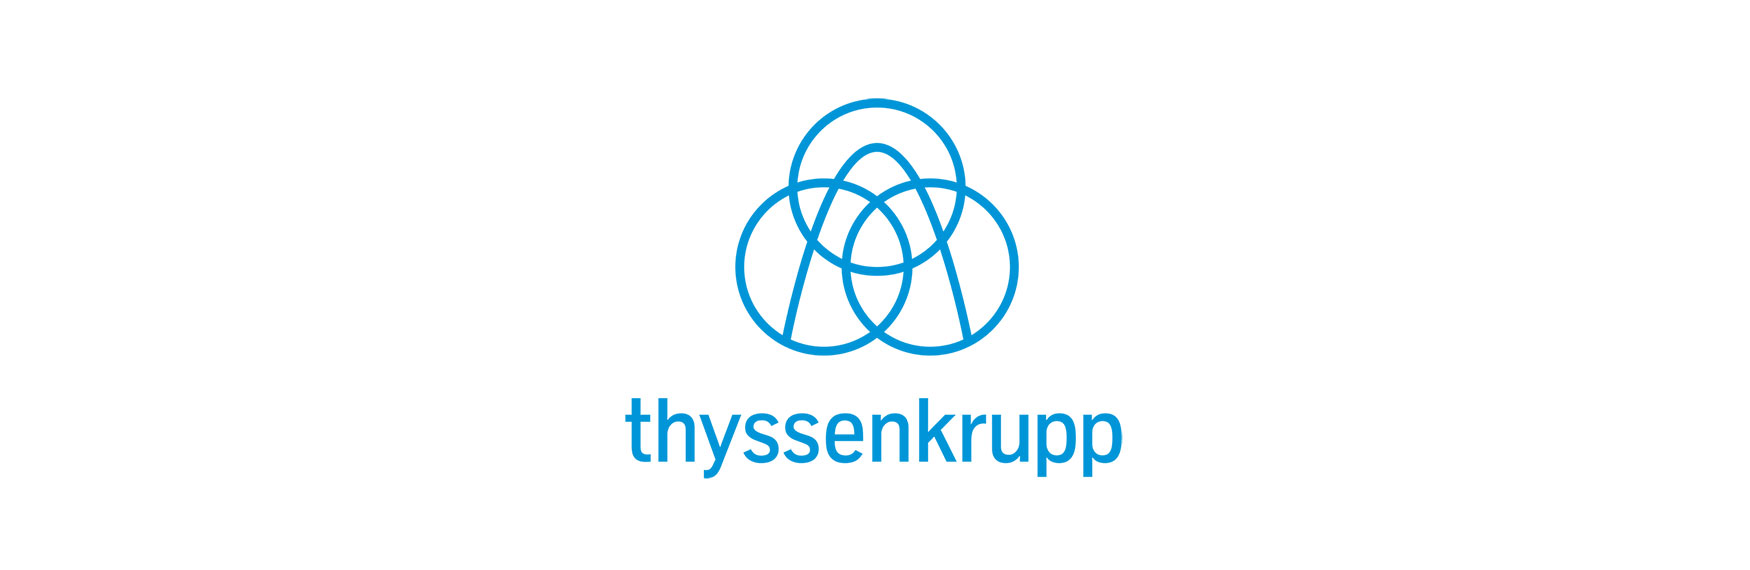 Thyssenkrupp 